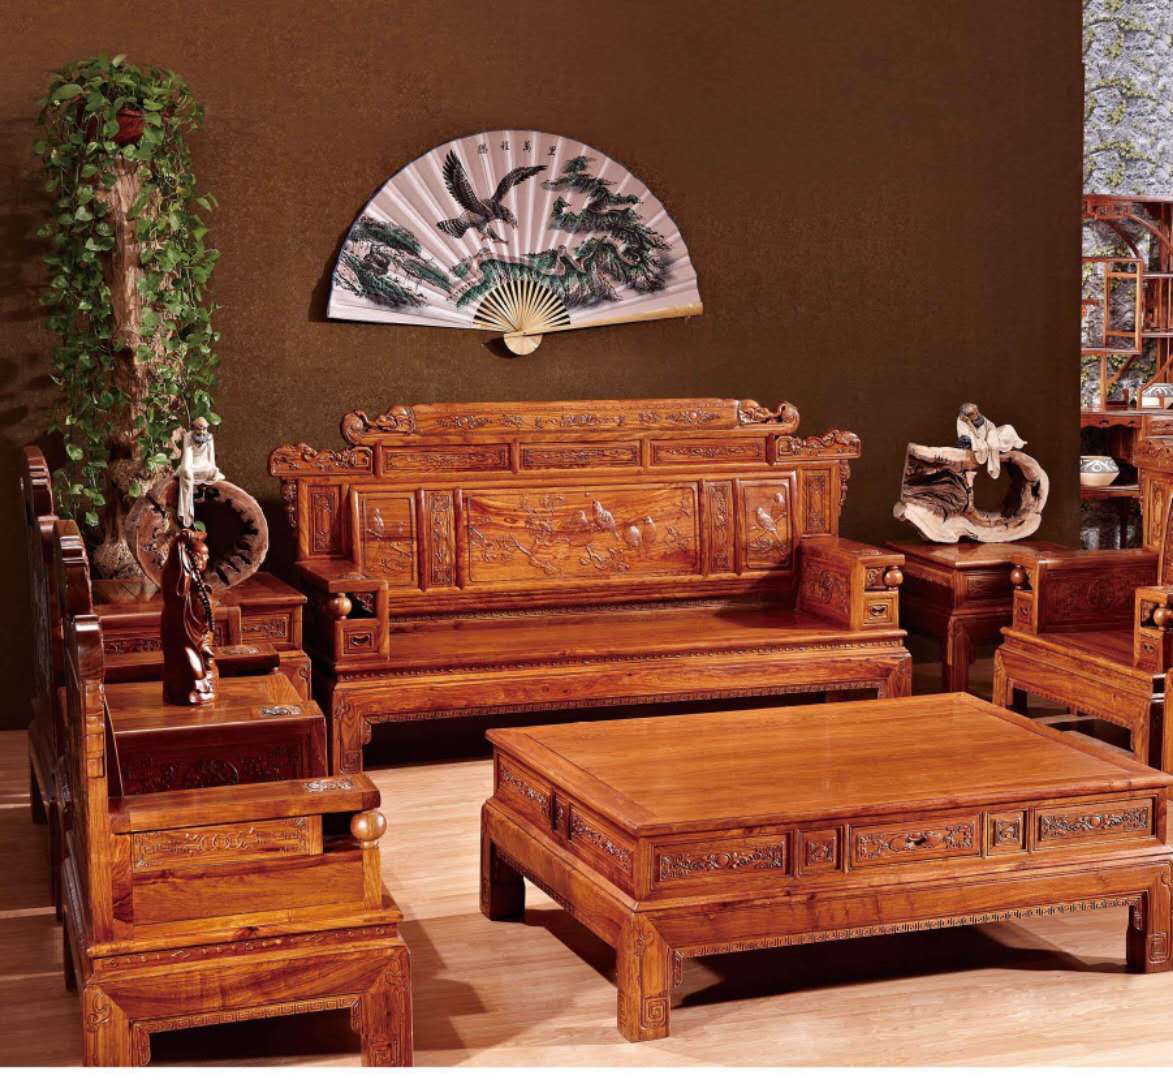 北京信德红木家具回收,高价回收红木家具沙发,回收缅甸花梨沙发,回收